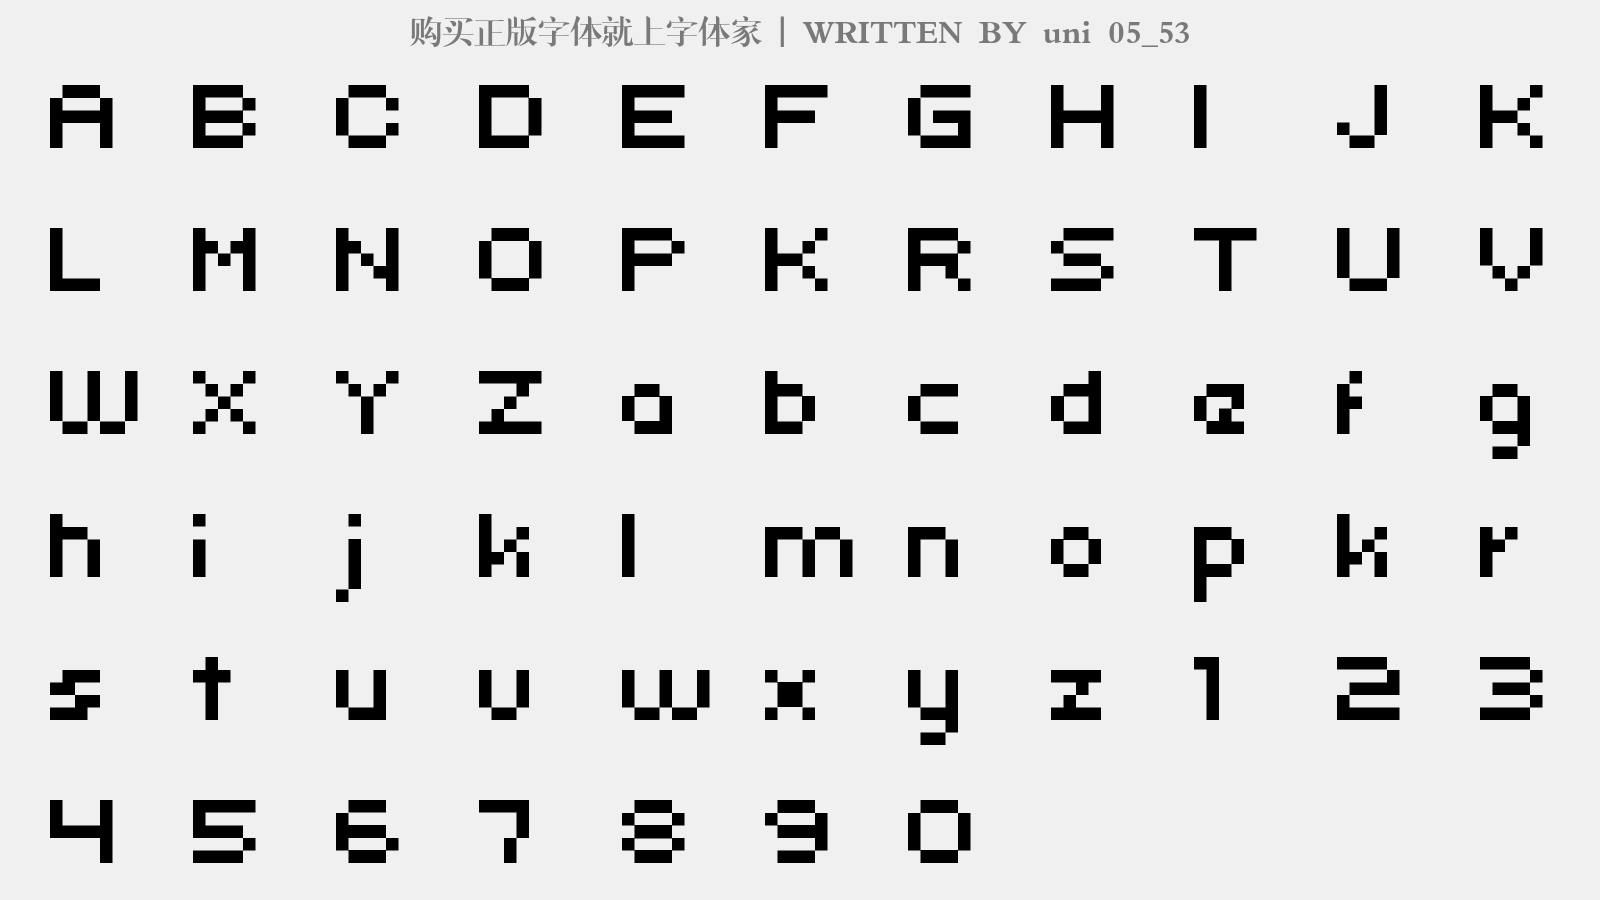 uni 05_53 - 大写字母/小写字母/数字